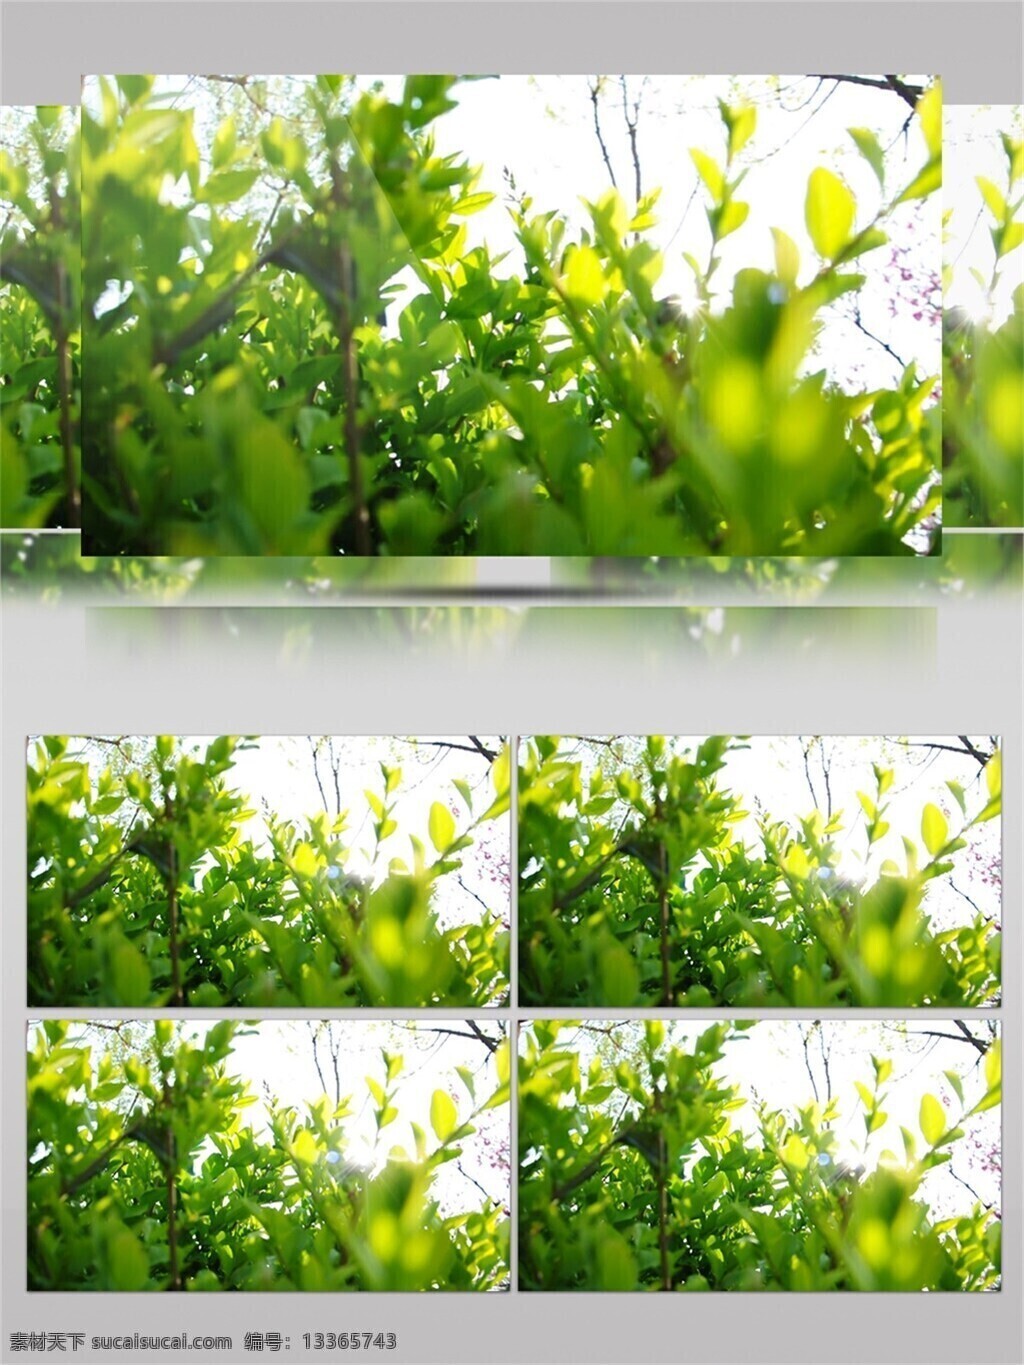 清香 扑鼻 绿茶 茶园 视频 音效 绿色 鲜嫩 植物 翻炒 近拍 视频音效 有机茶叶